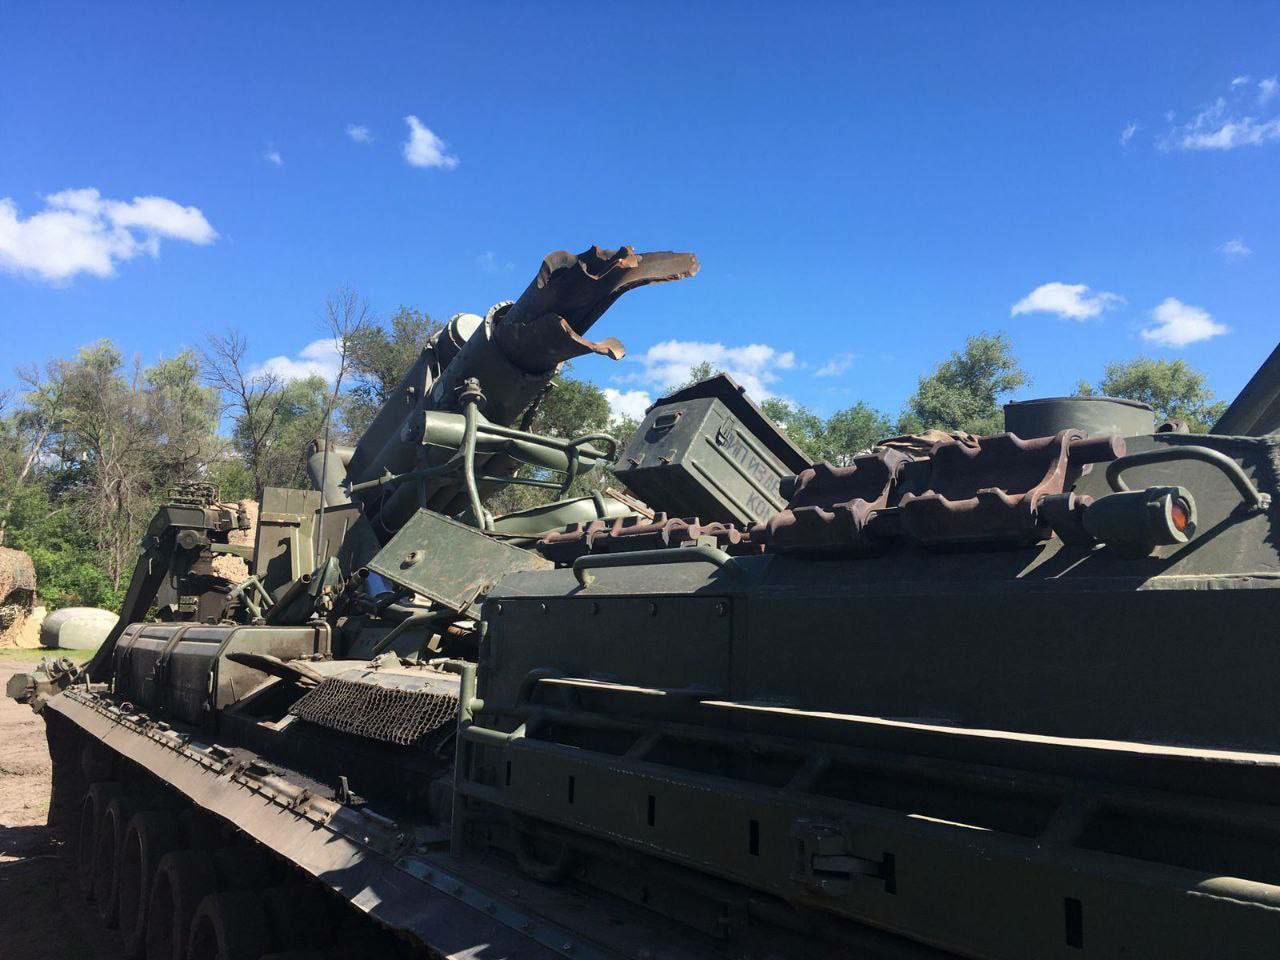 Rosyjskie wojsko dokonało samozniszczenia stanowiska artyleryjskiego 2S7M Malka - w Rosji nazywana jest najpotężniejszą haubicą na świecie